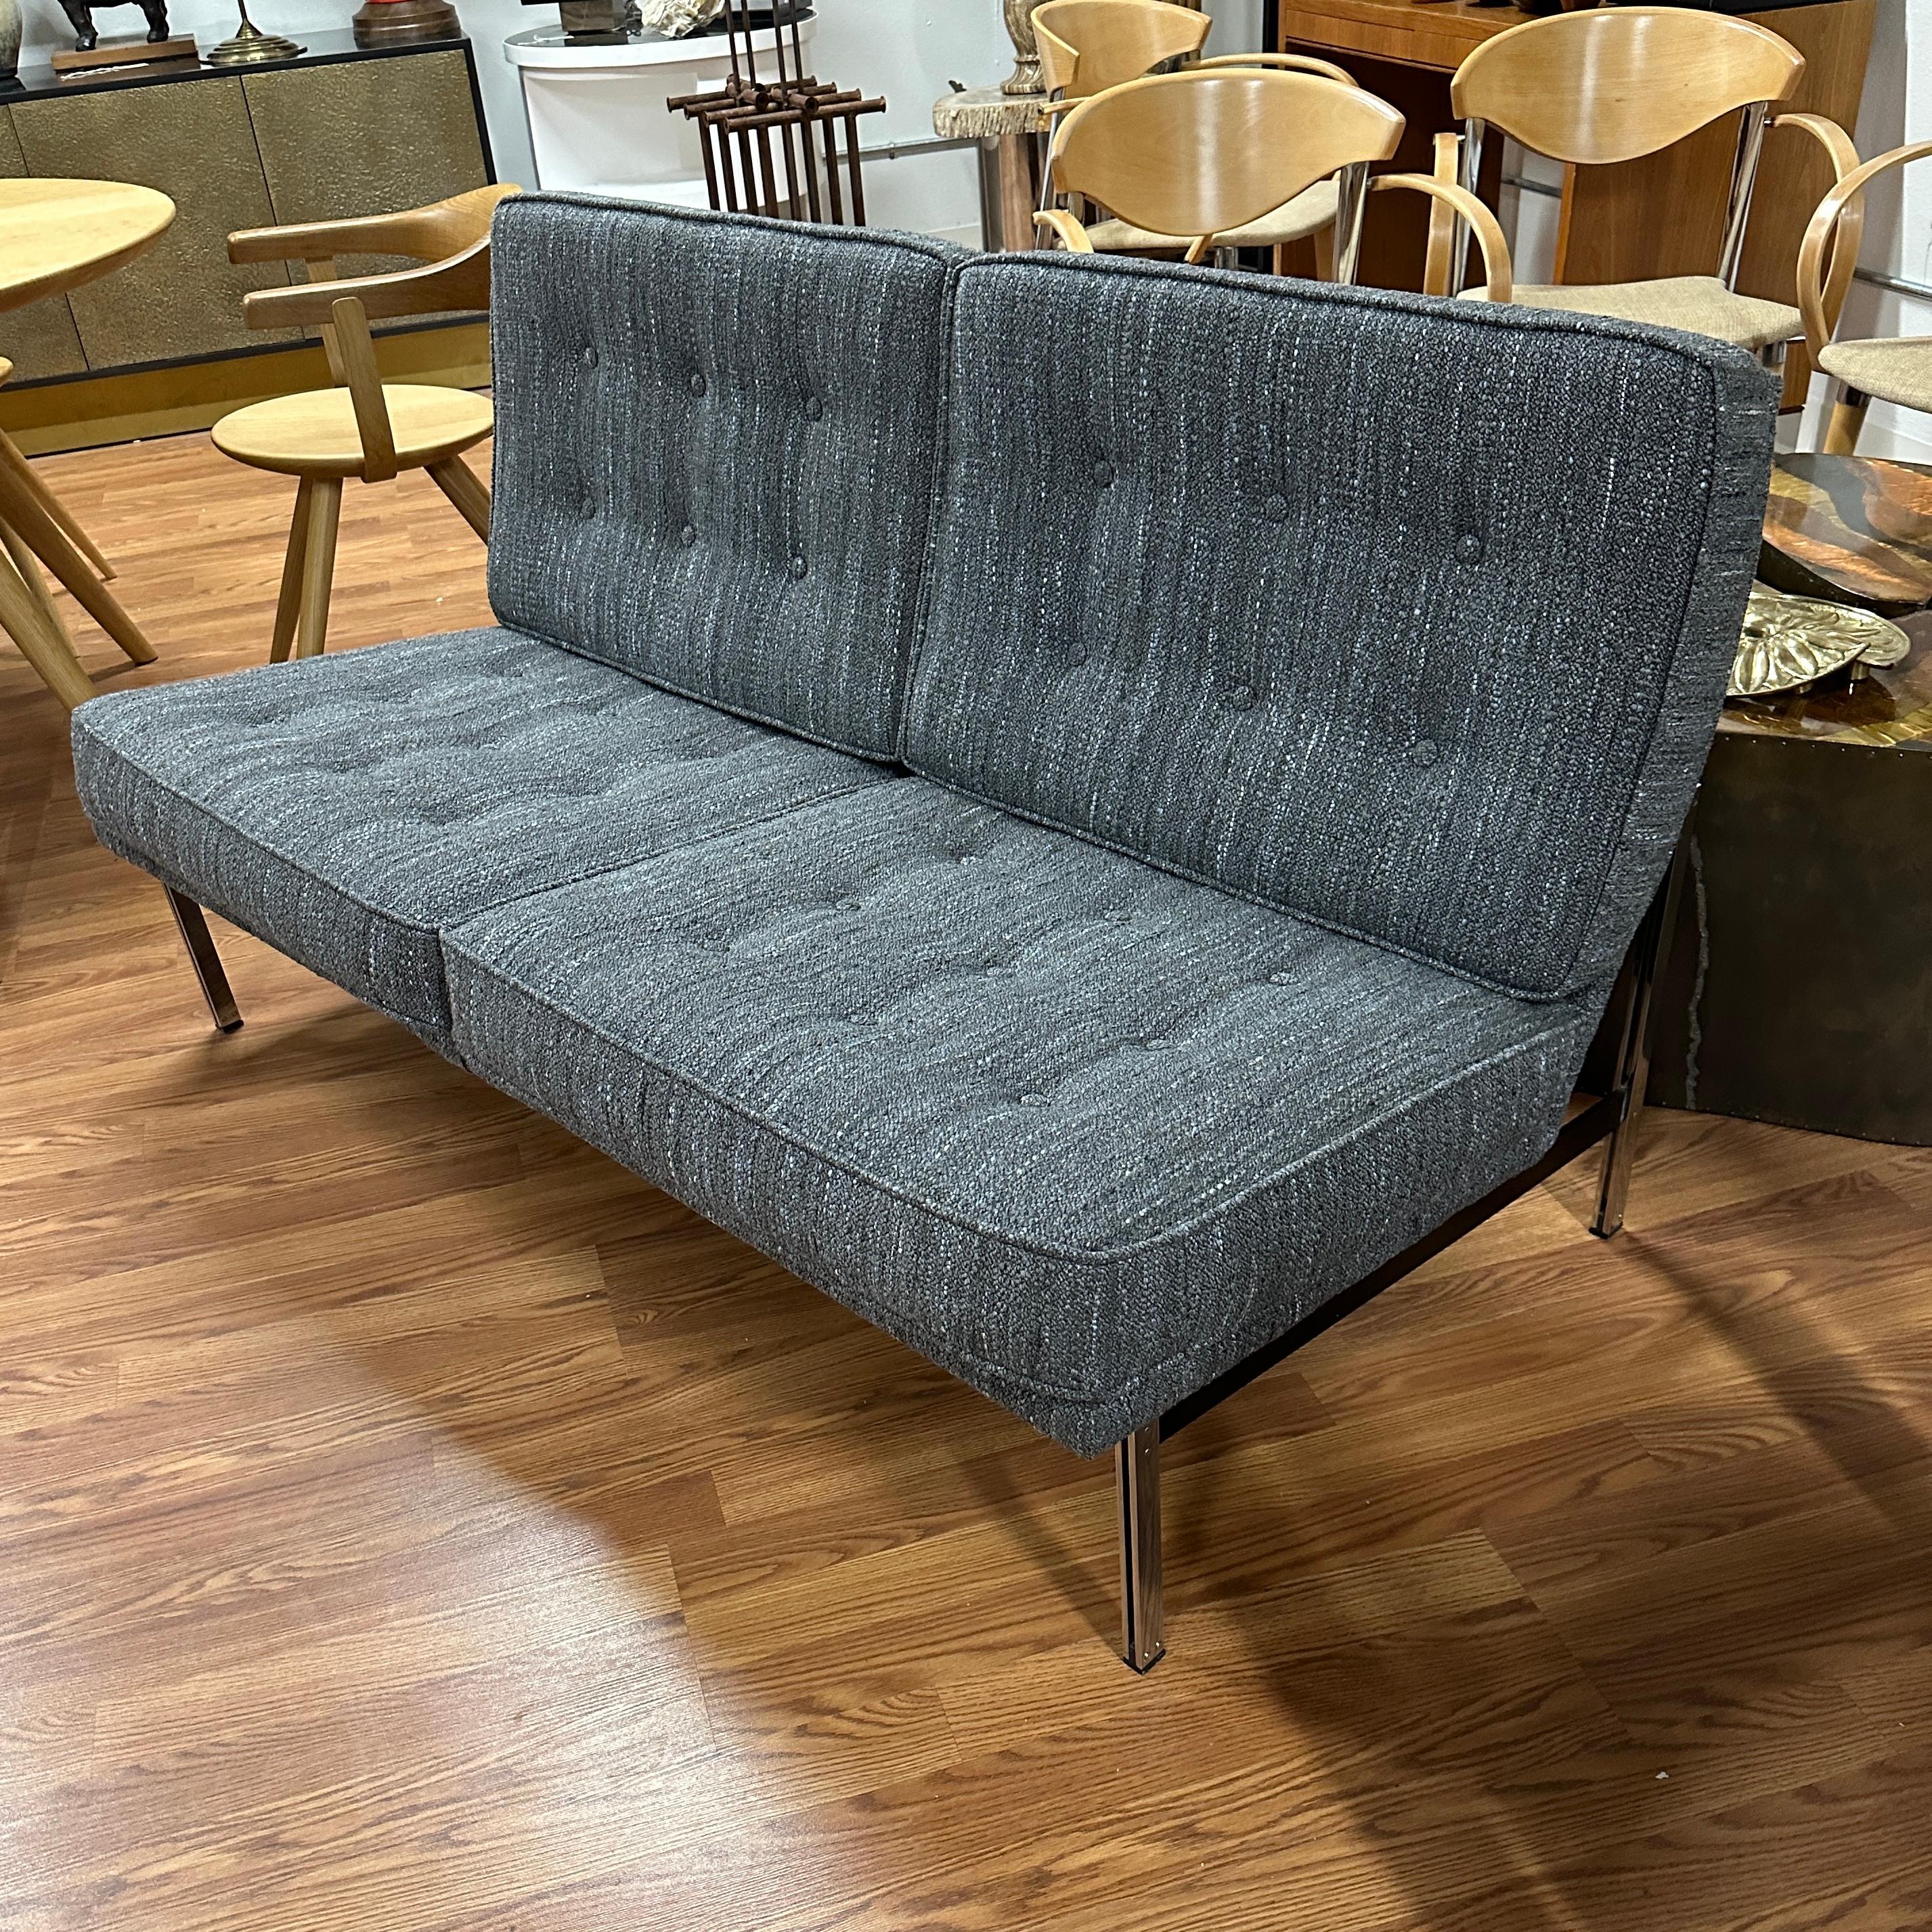 Eine schöne komplette neu gepolstert Vintage Knoll Parallel Bar Sofa oder 2 Sitz Sofa. Der von uns gewählte Stoff ist ein raffiniertes All-Over-Multicolor-Gewebe aus raumgefärbten Garnen mit einem Anteil von 38% Wolle, 28% Baumwolle, 28% Acryl und